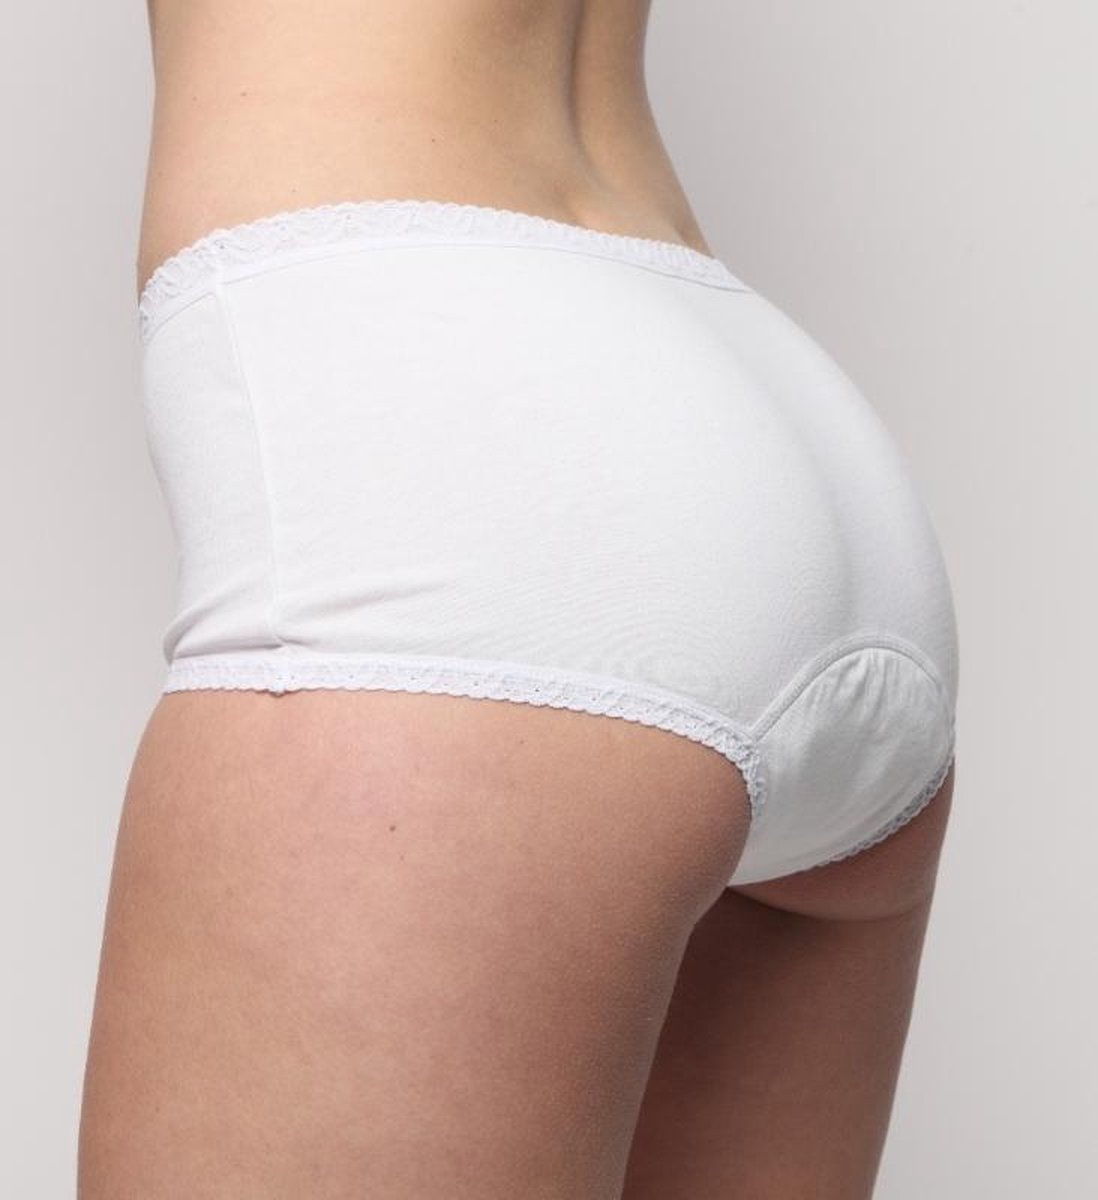 Wasbaar incontinentie slip – Dames absorberend ondergoed – Wit slip maat M  – Zekerheid | bol.com